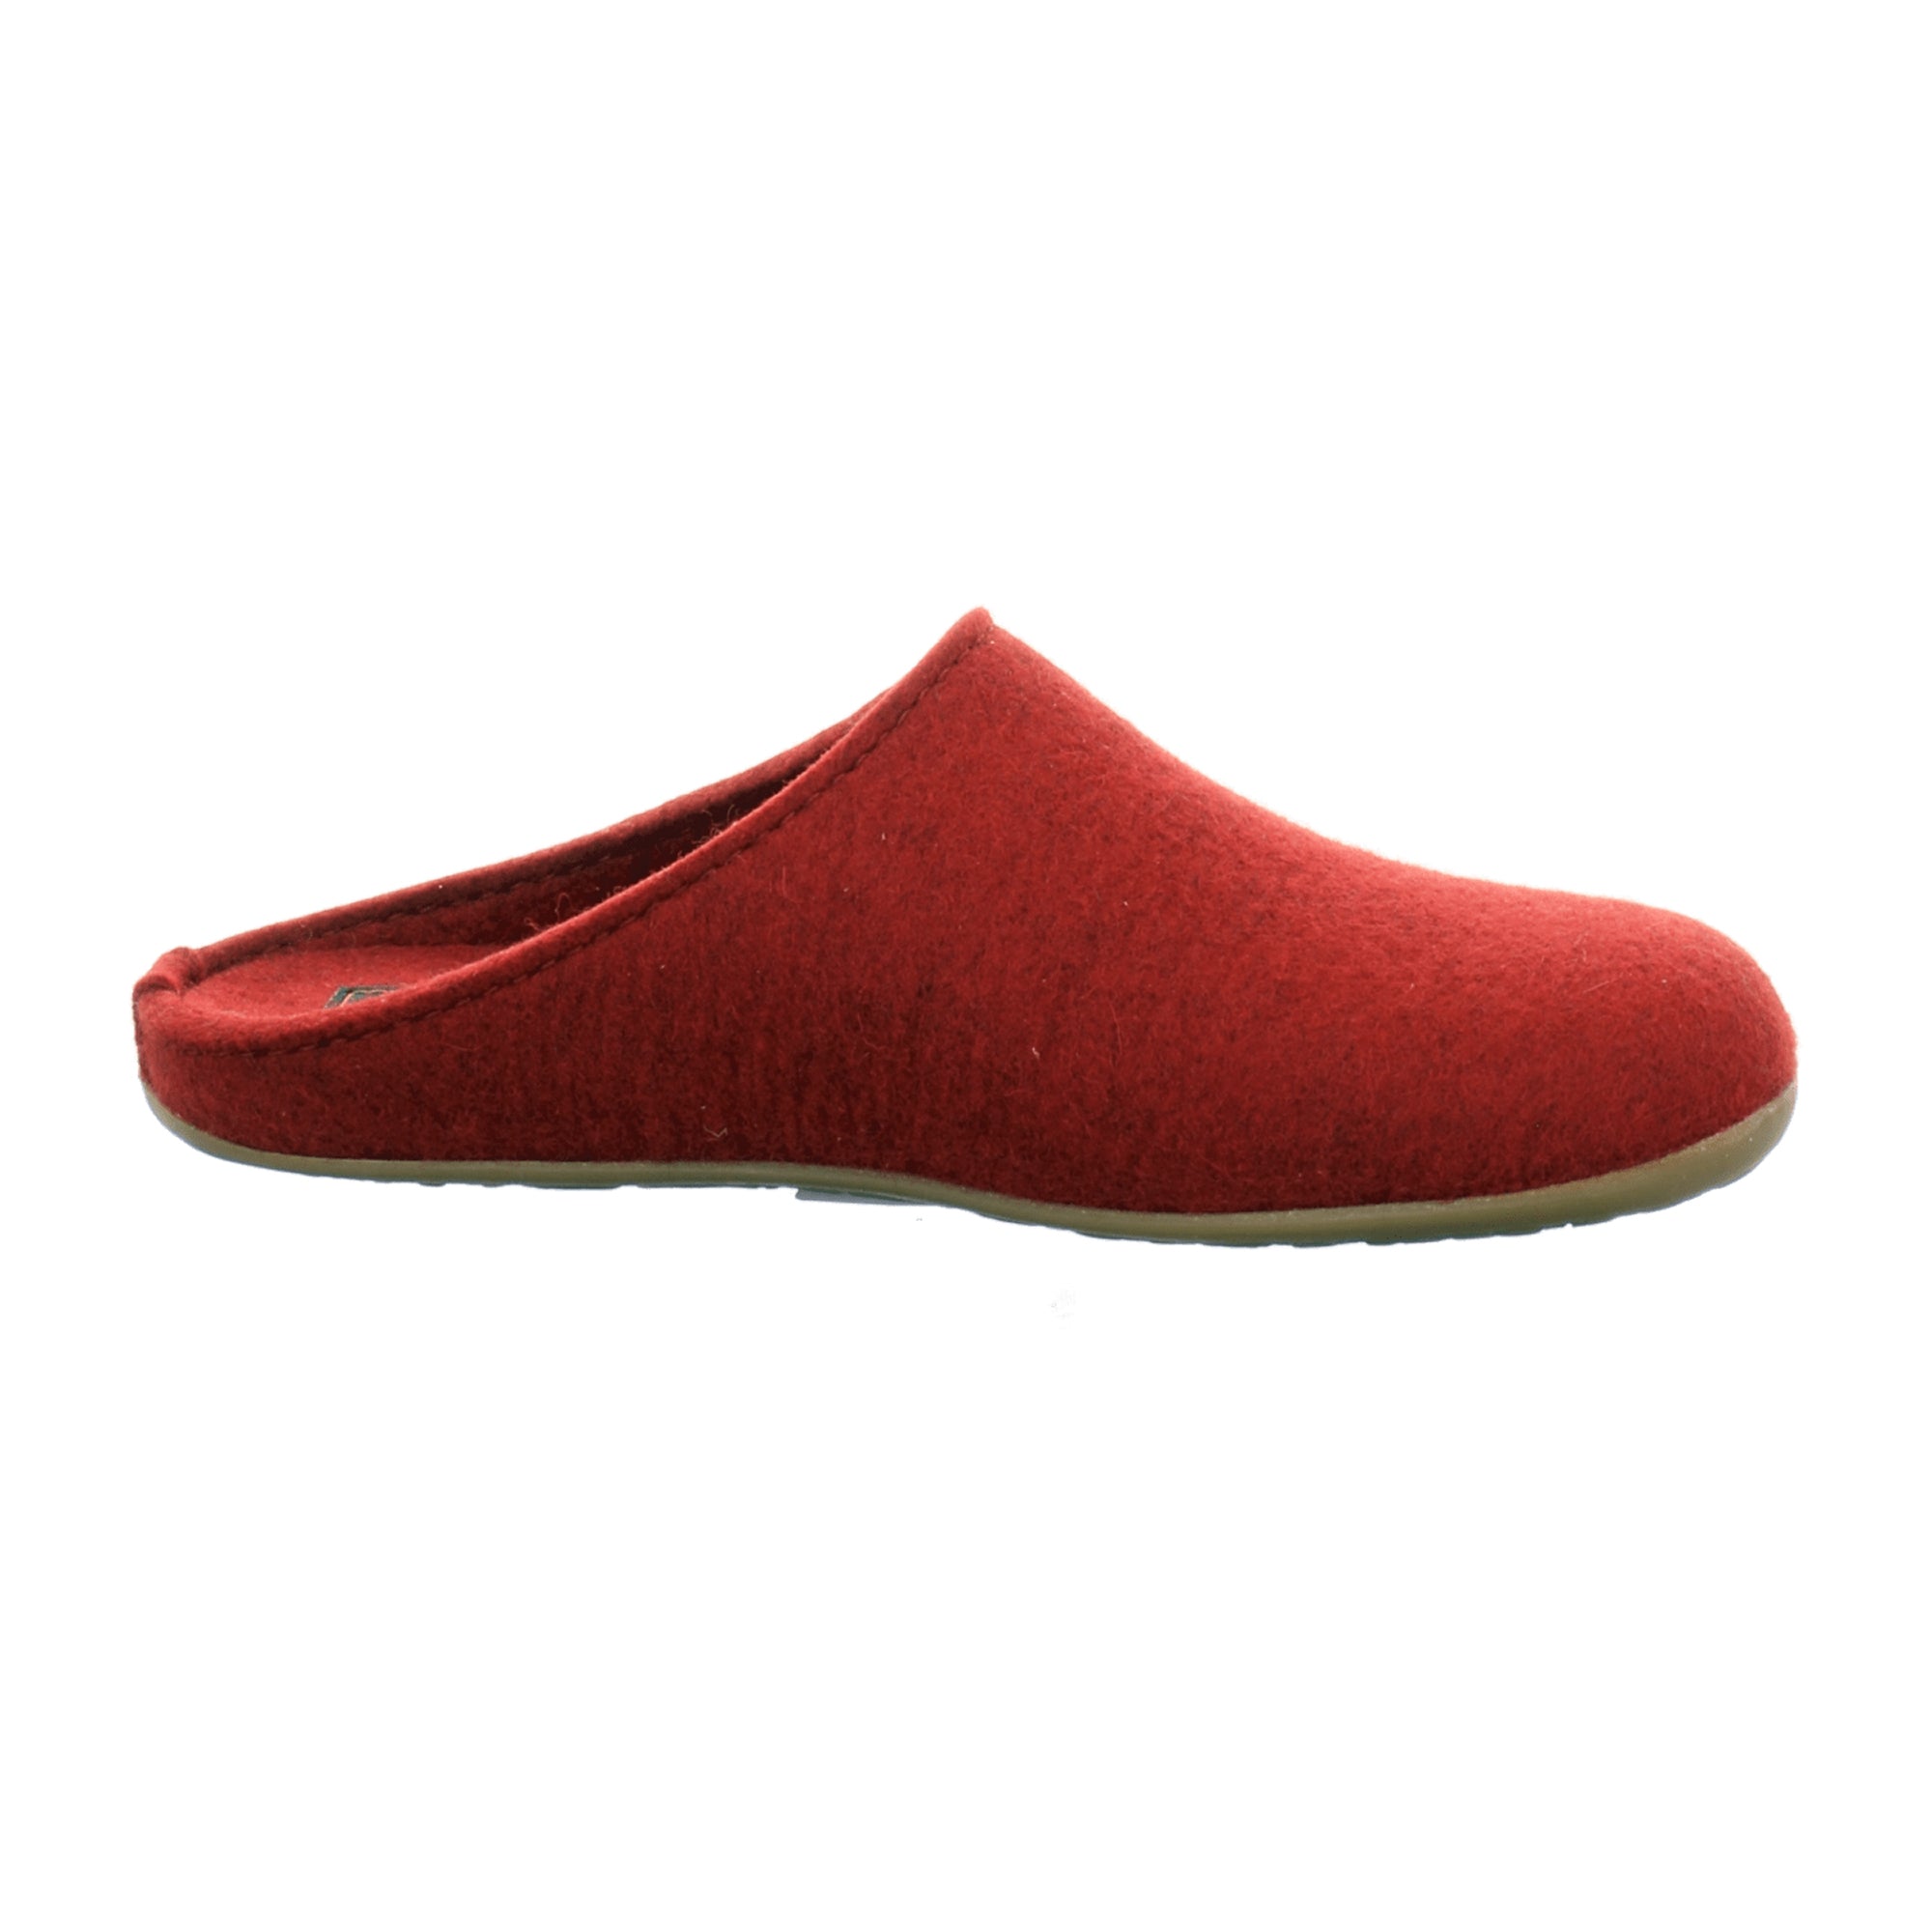 Haflinger Everest Fundus Men's Wool Slippers, Rubin Red